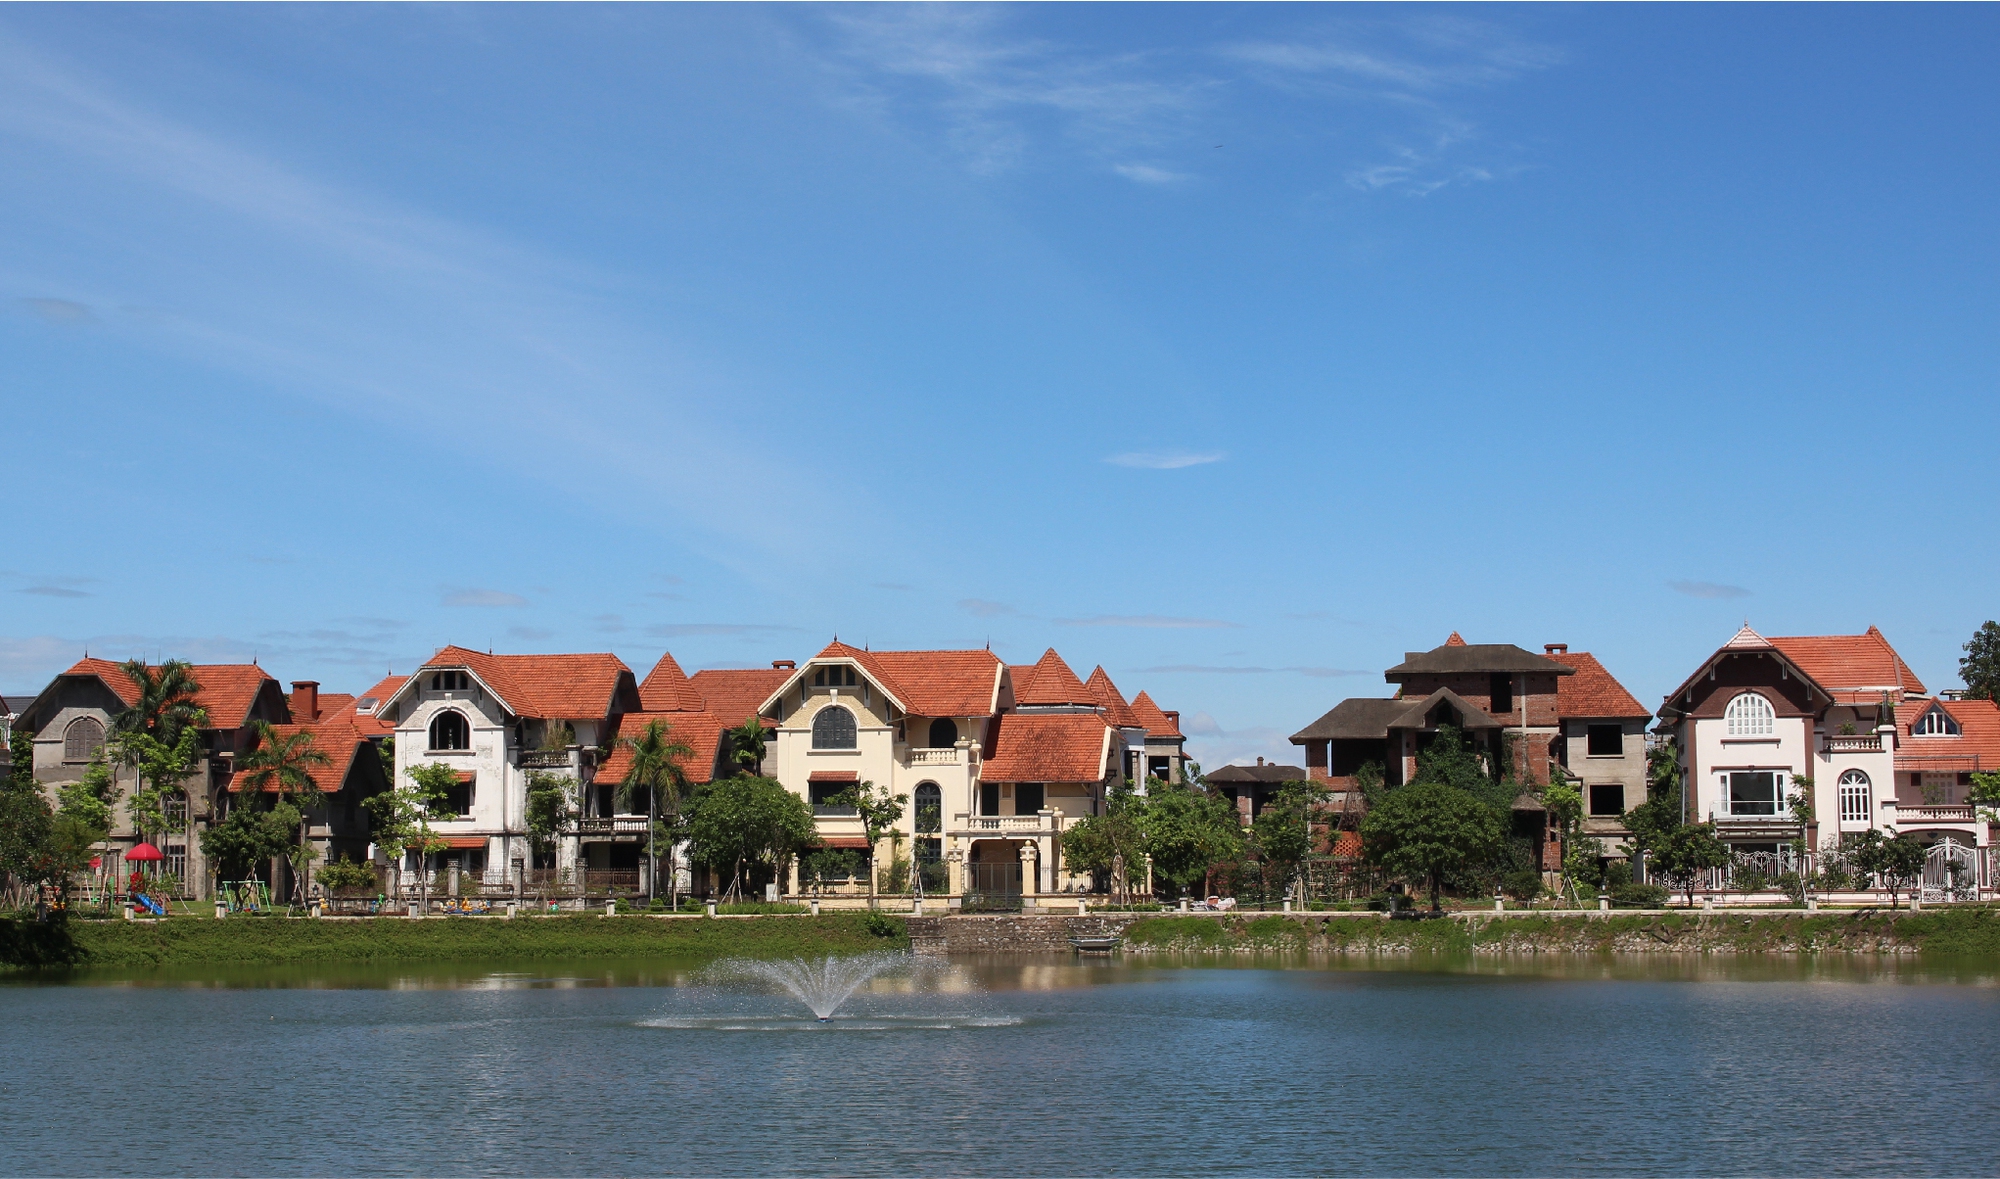 Người giàu đổ về Tây Hà Nội, làng biệt thự hoang bỗng tăng giá gấp ba - Ảnh 2.